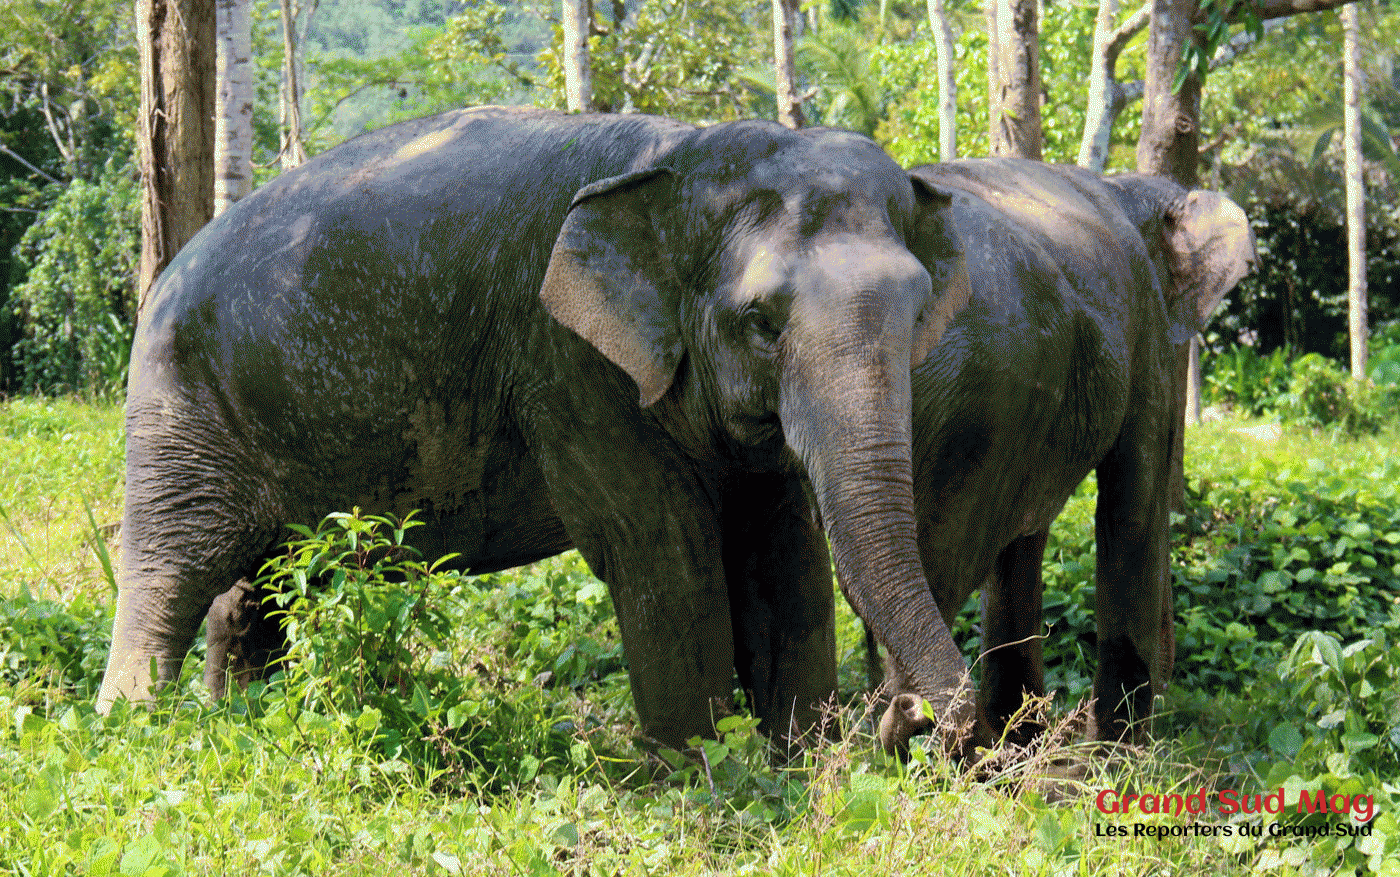 Les journées s'enchaînent rapidement du côté de chiang mai. Thailande Phuket Elephant Sanctuary Grand Sud Mag